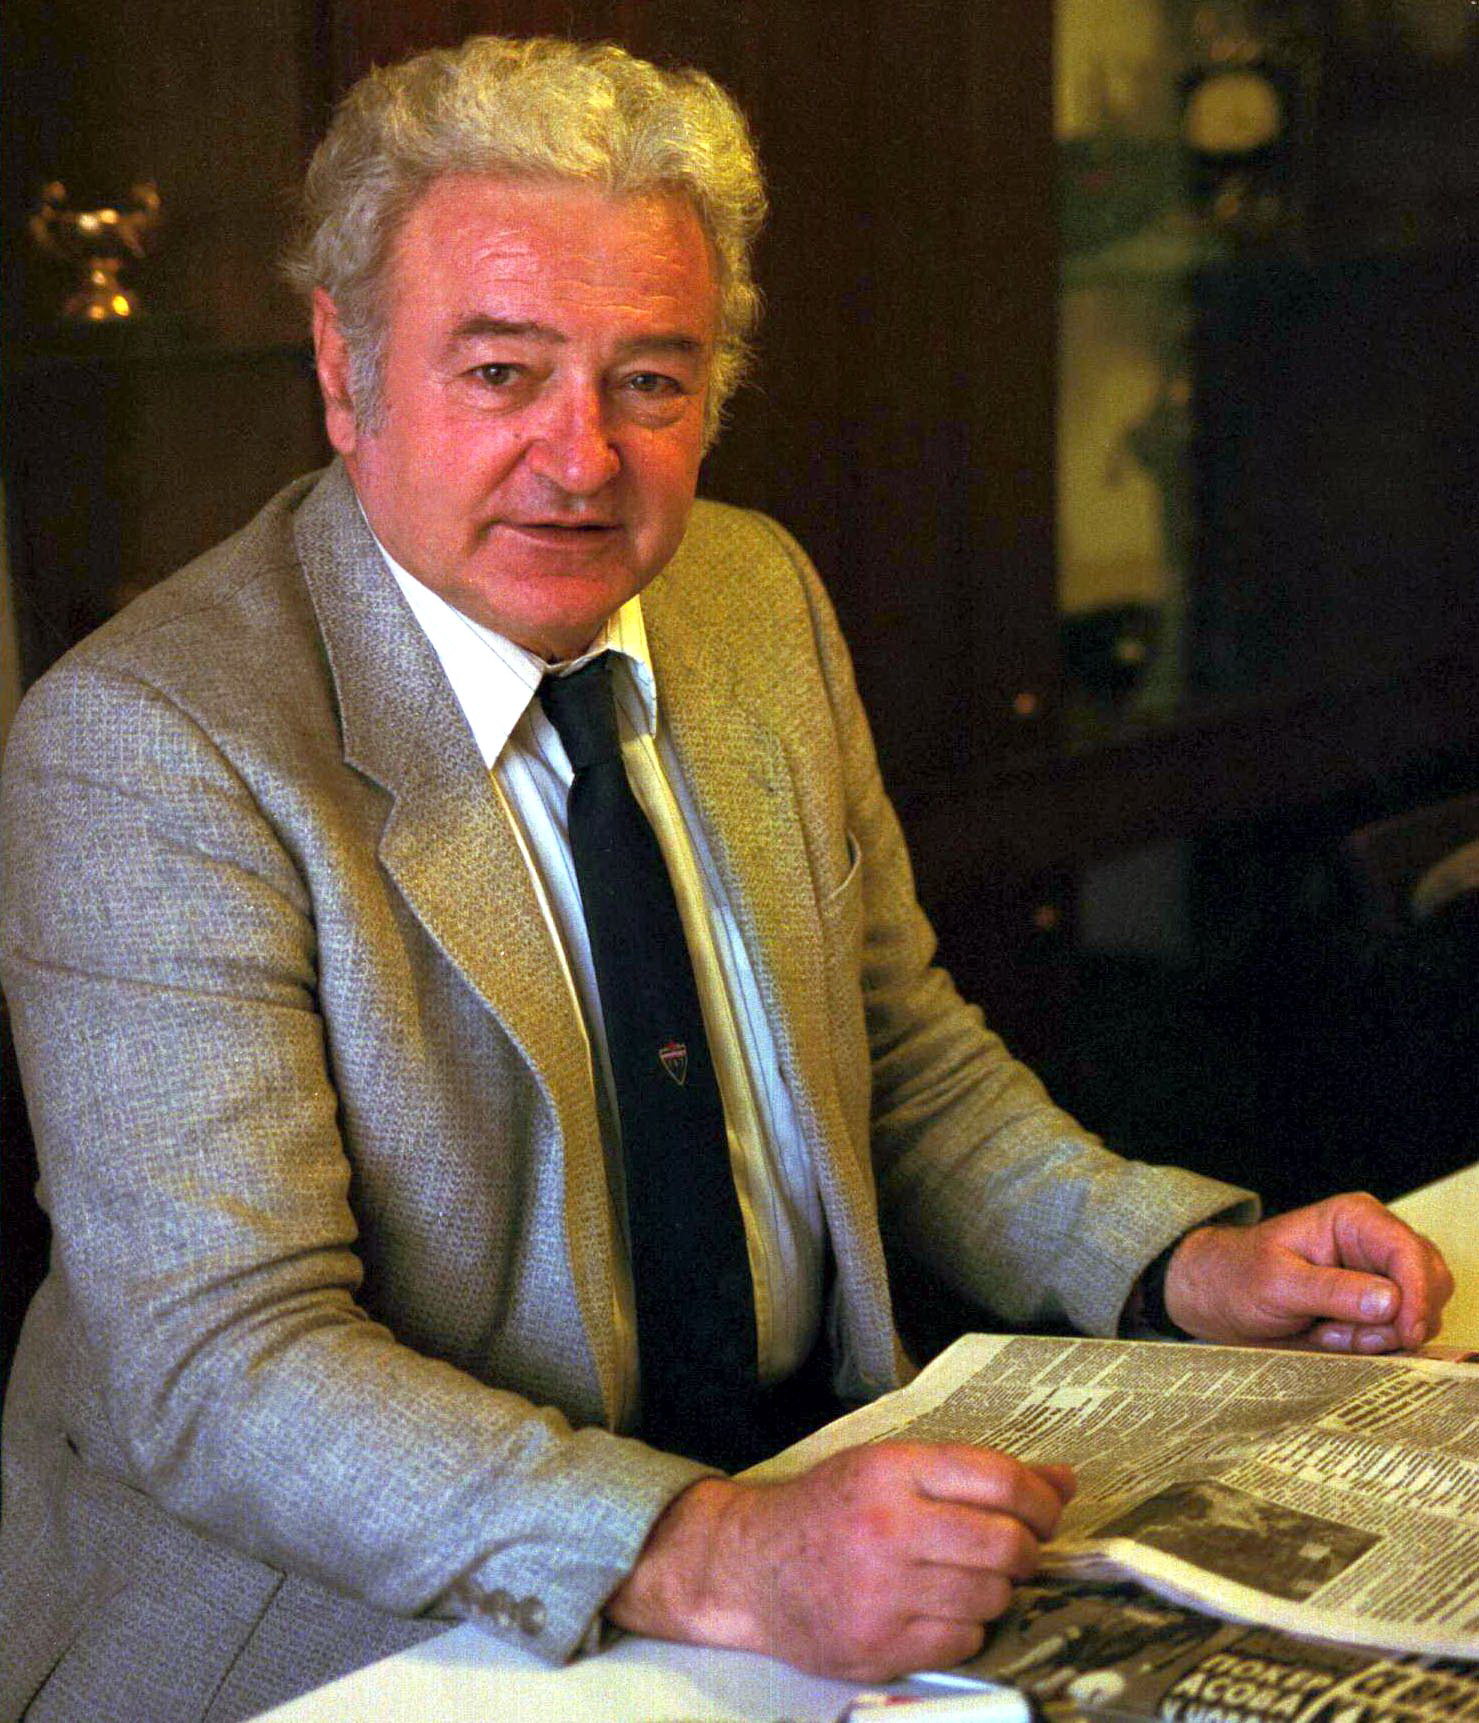 Milan Galić